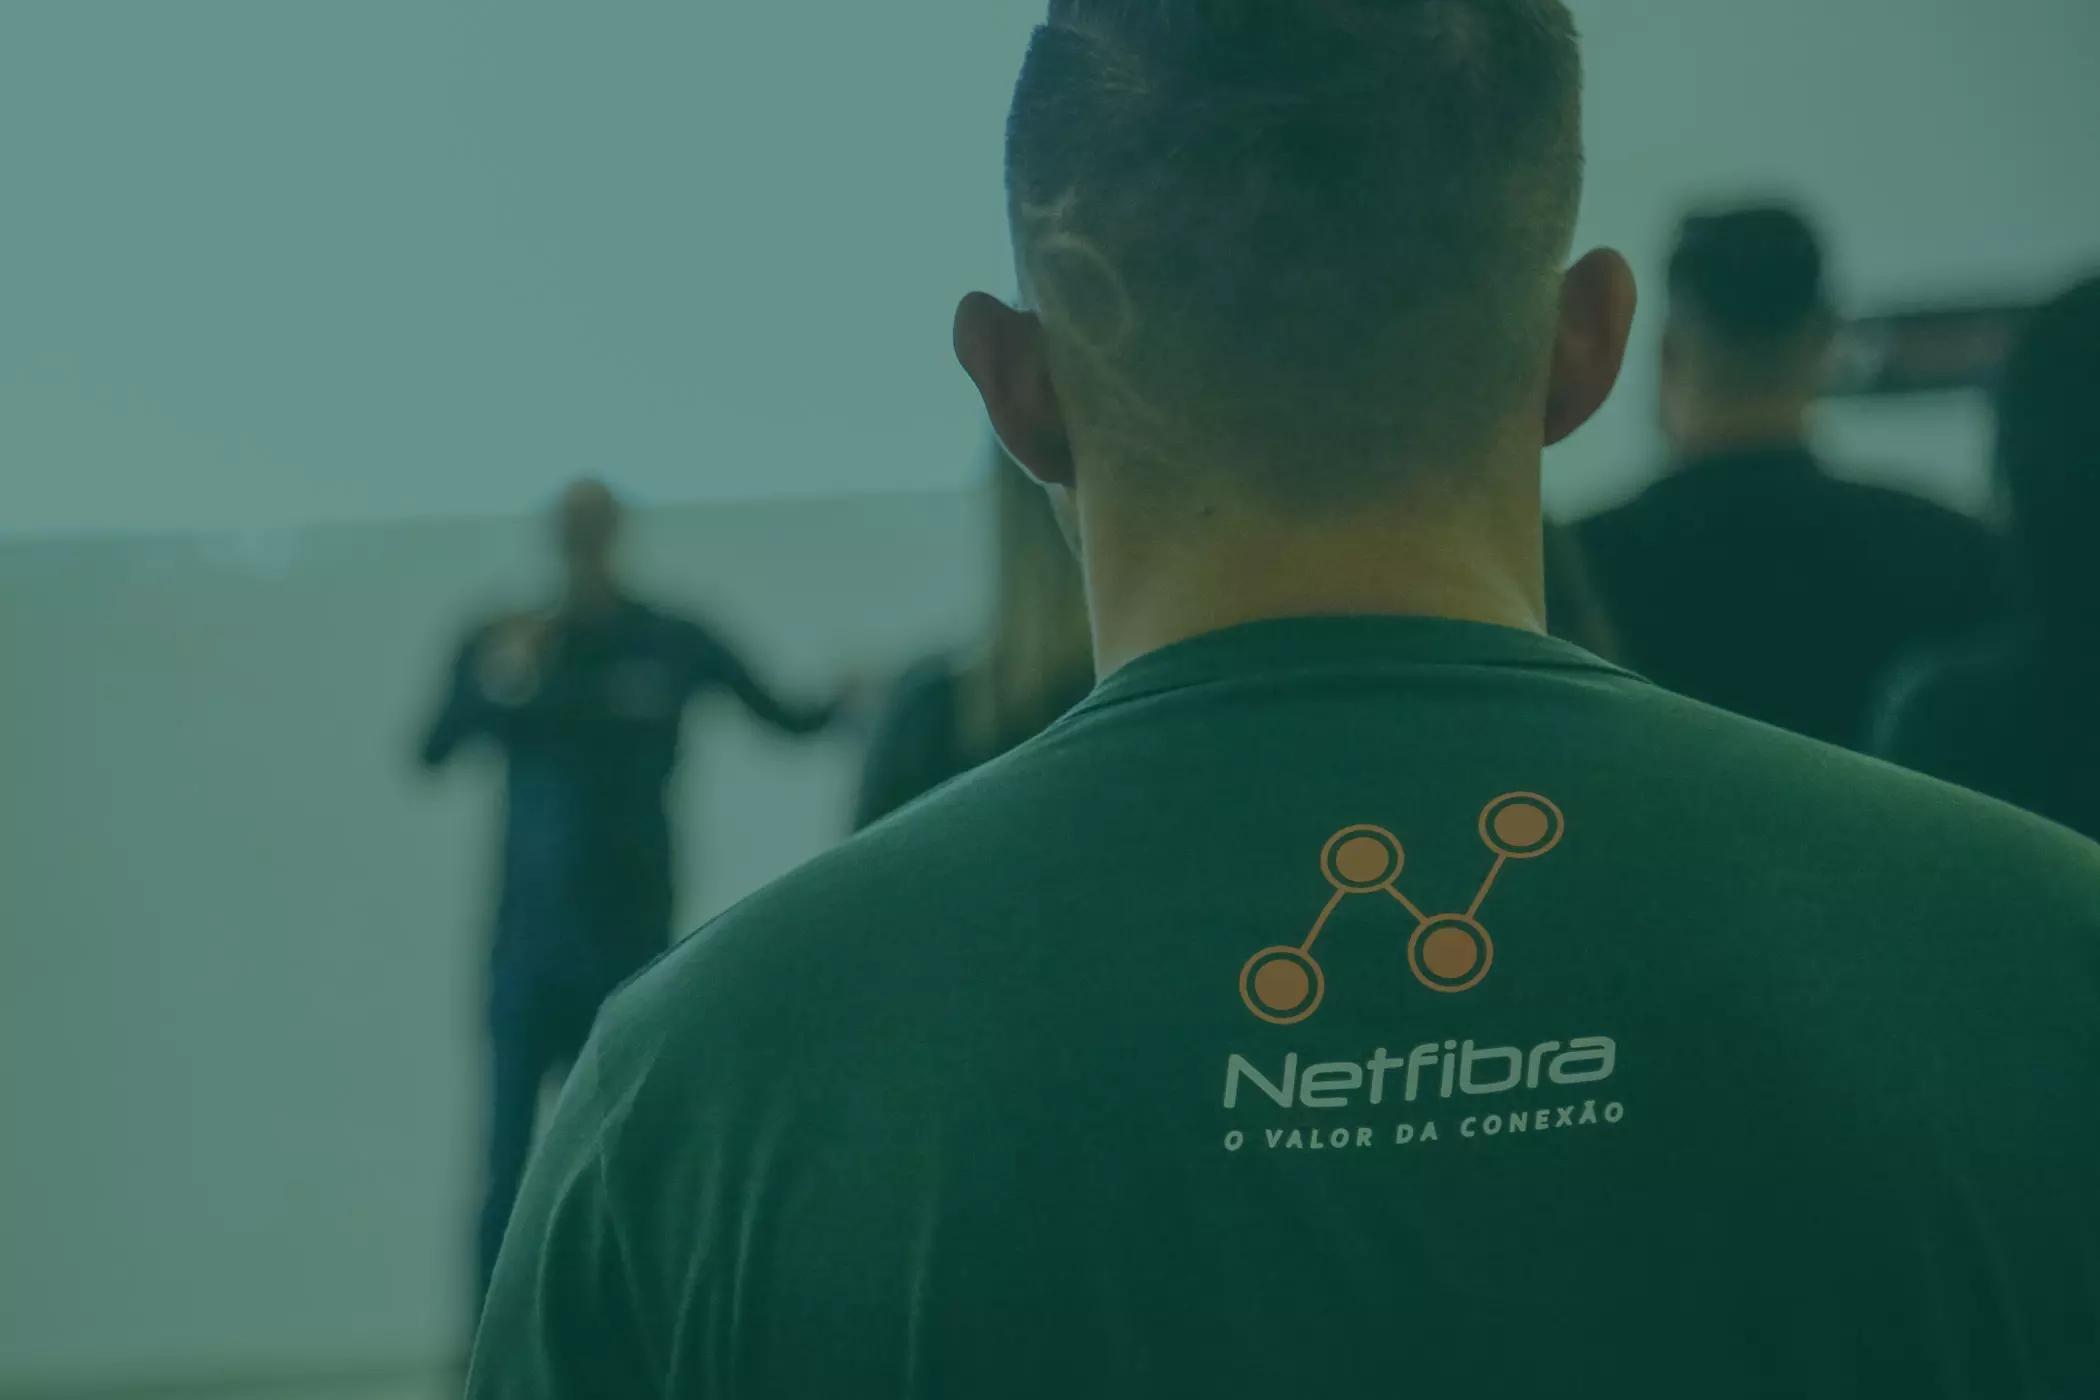 Netfibra Telecom - O valor da Conexão